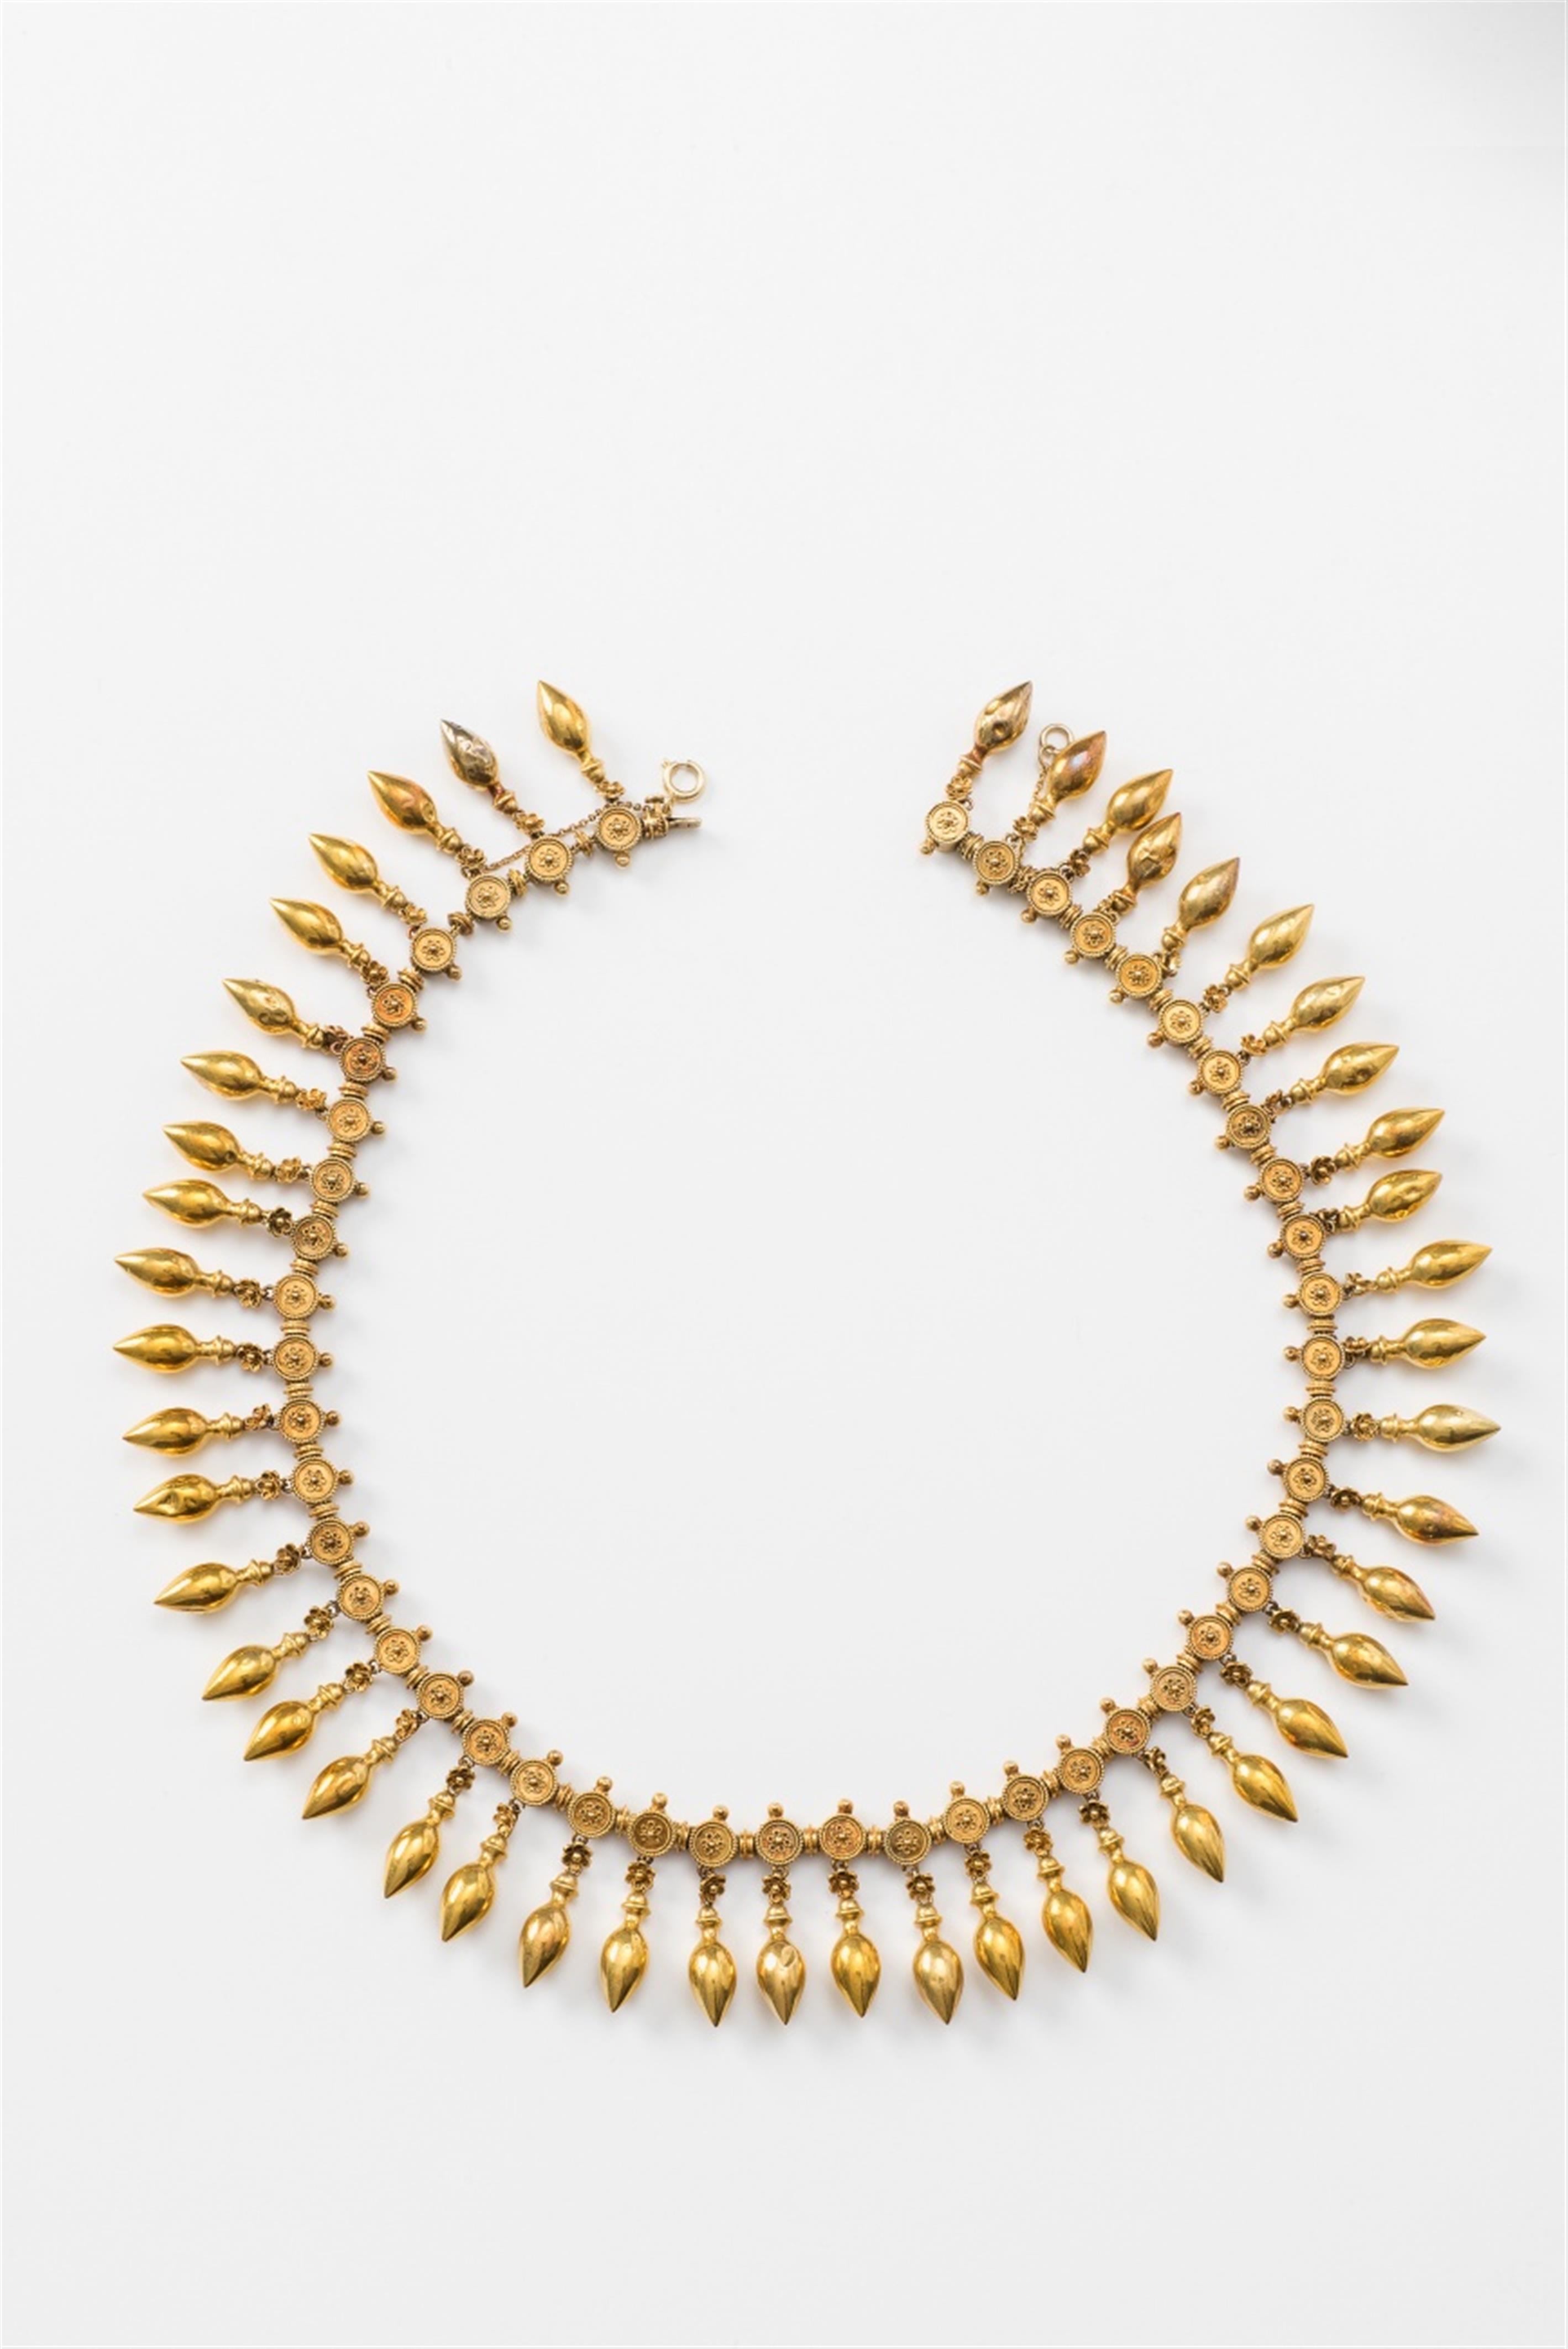 An 18k gold Antique Revival fringe necklace - image-1